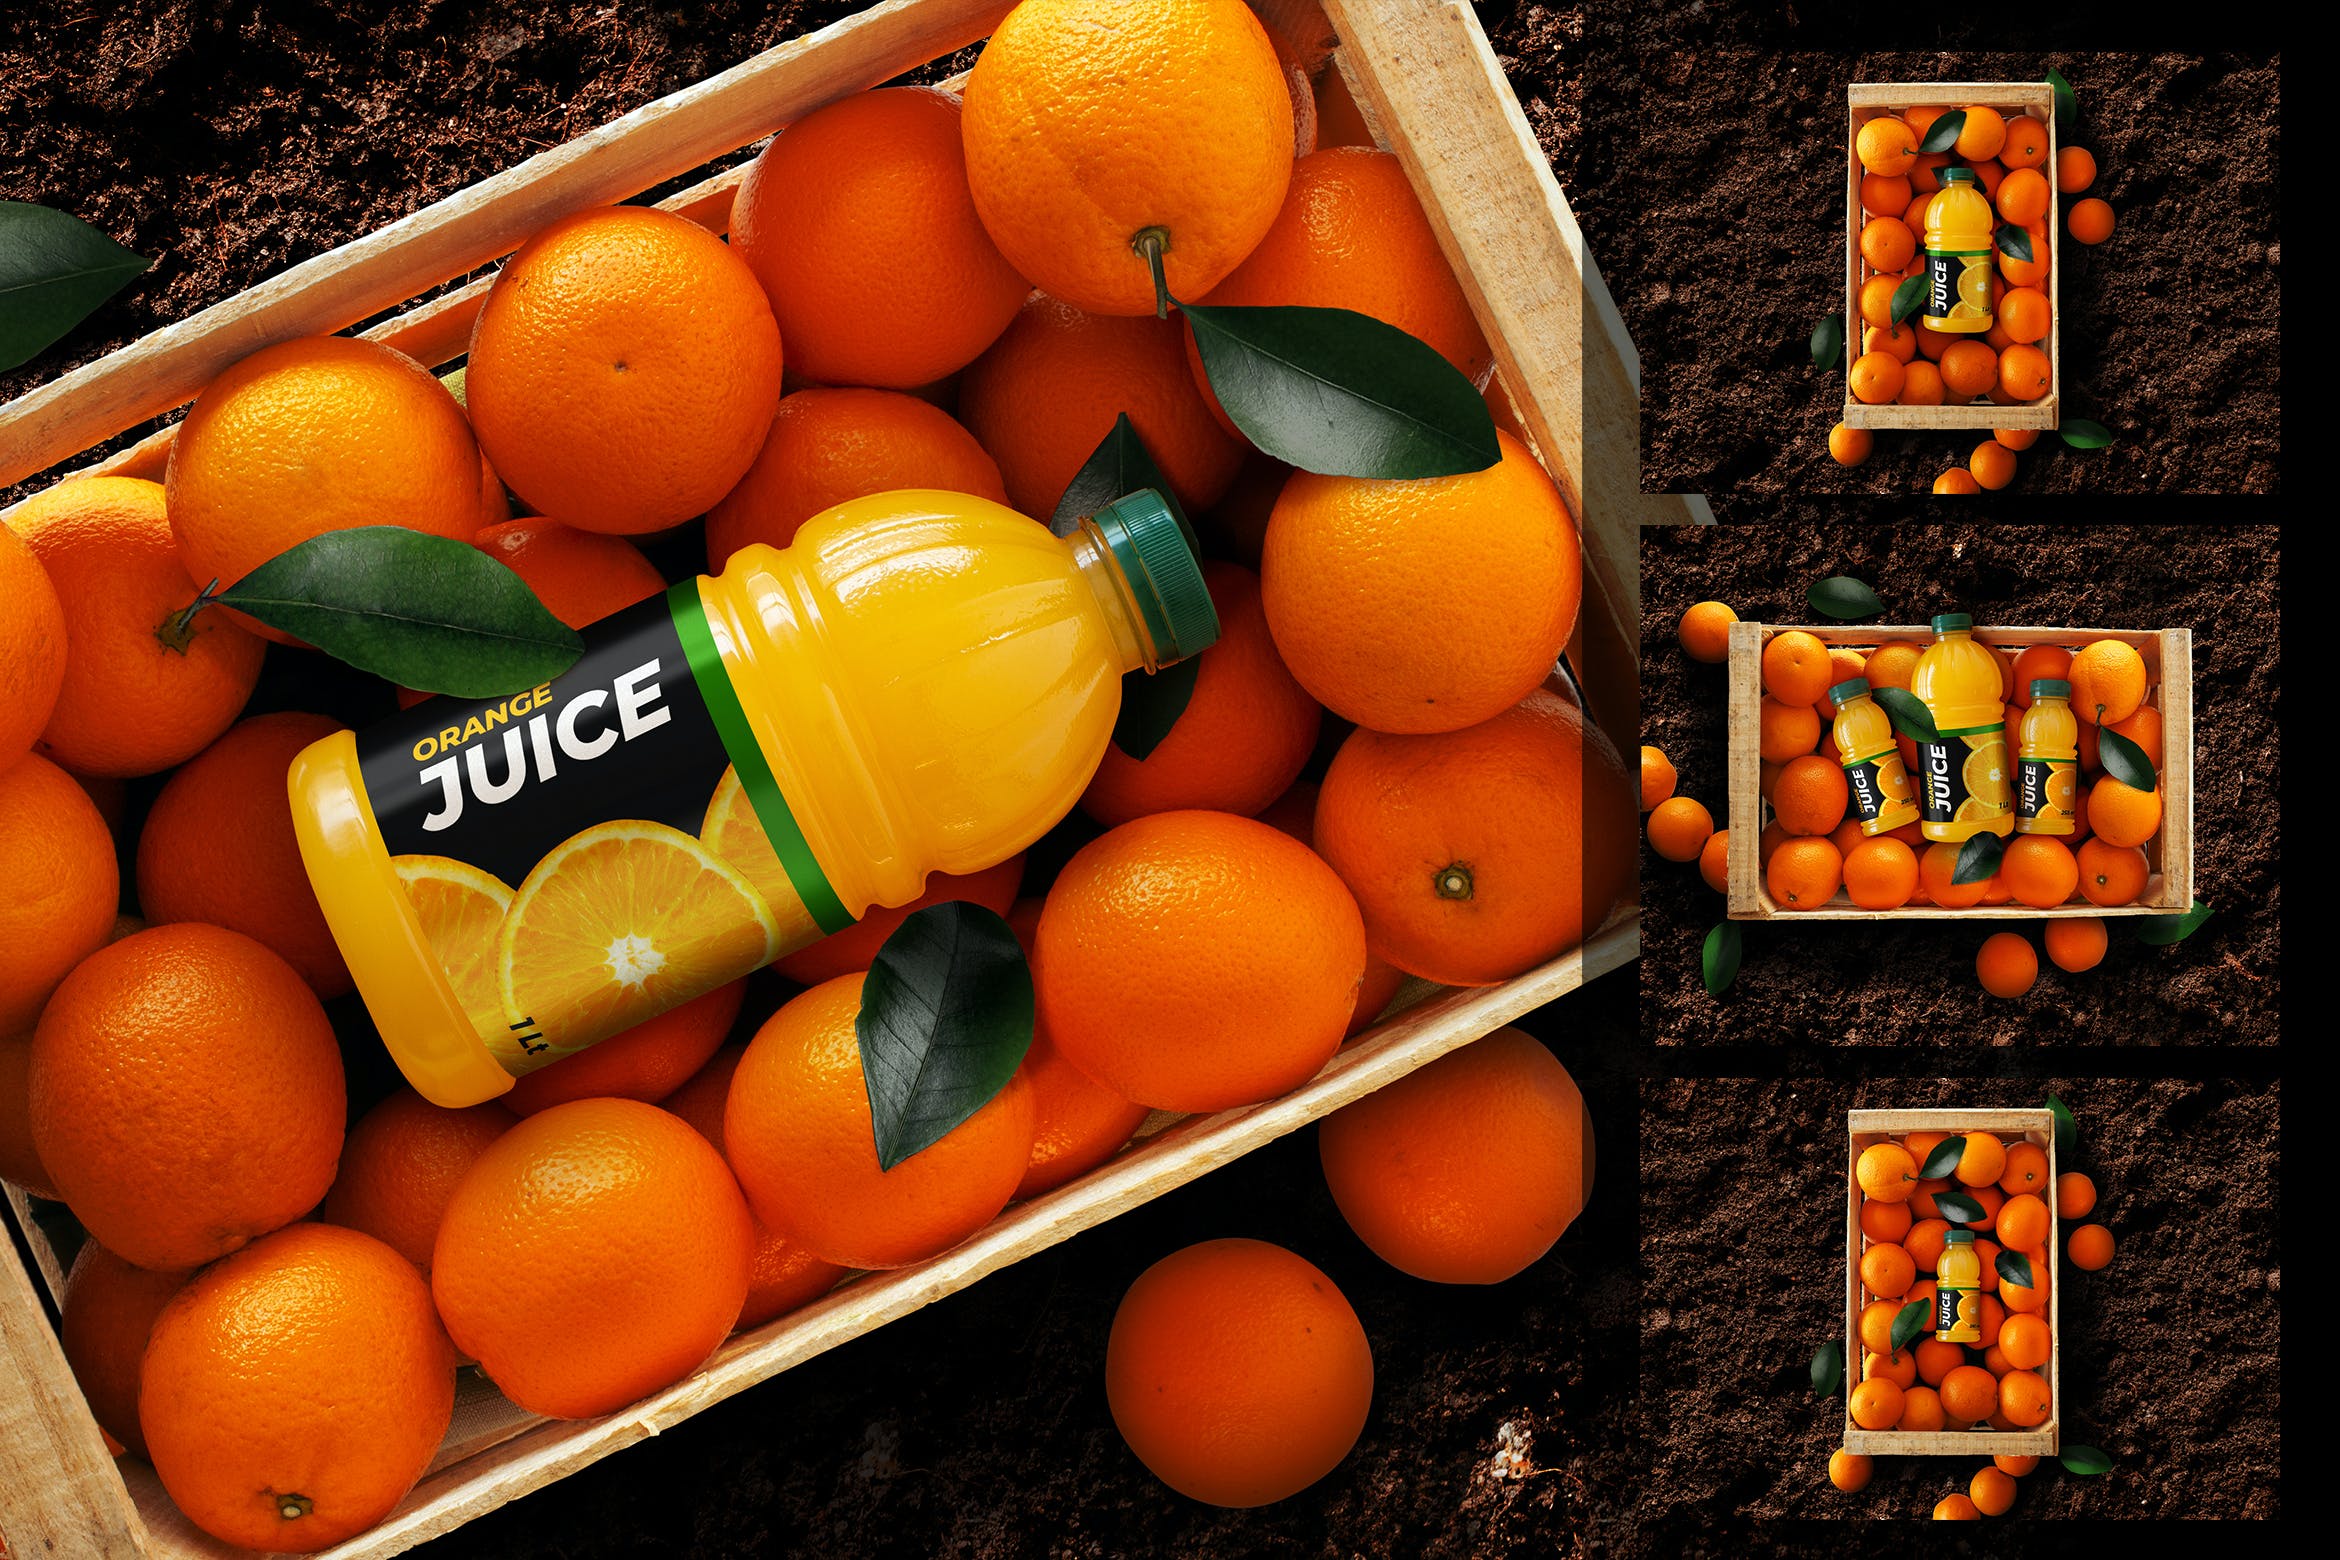 橙汁瓶外包装样机模板素材样机下载FV3AZ4D插图